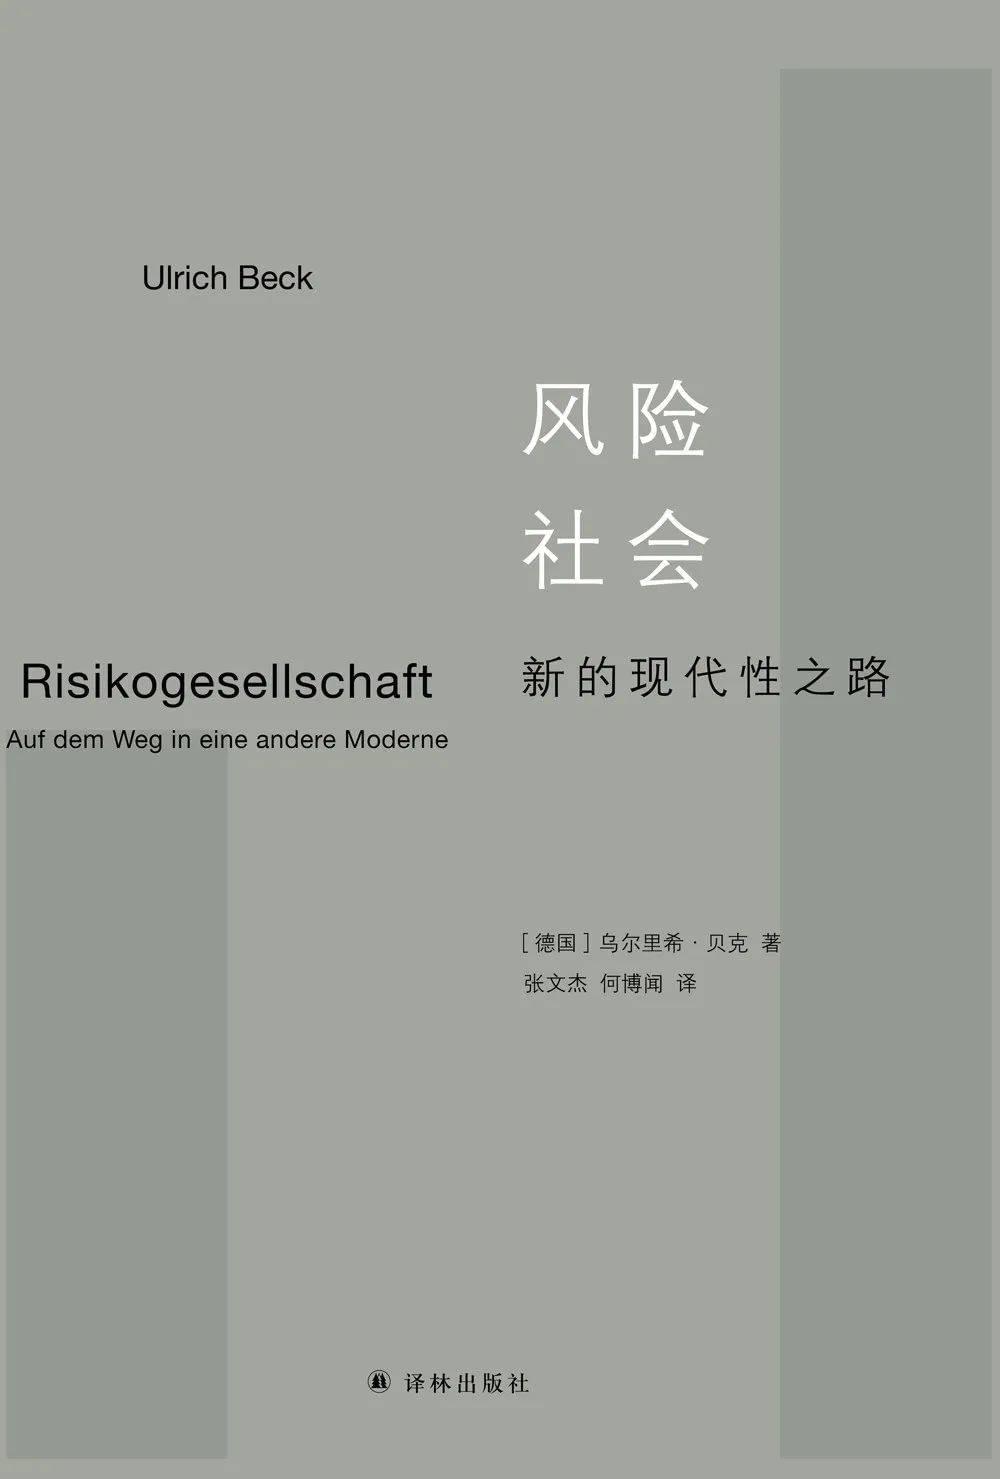 风险社会，乌尔里希·贝克，译林出版社，2018